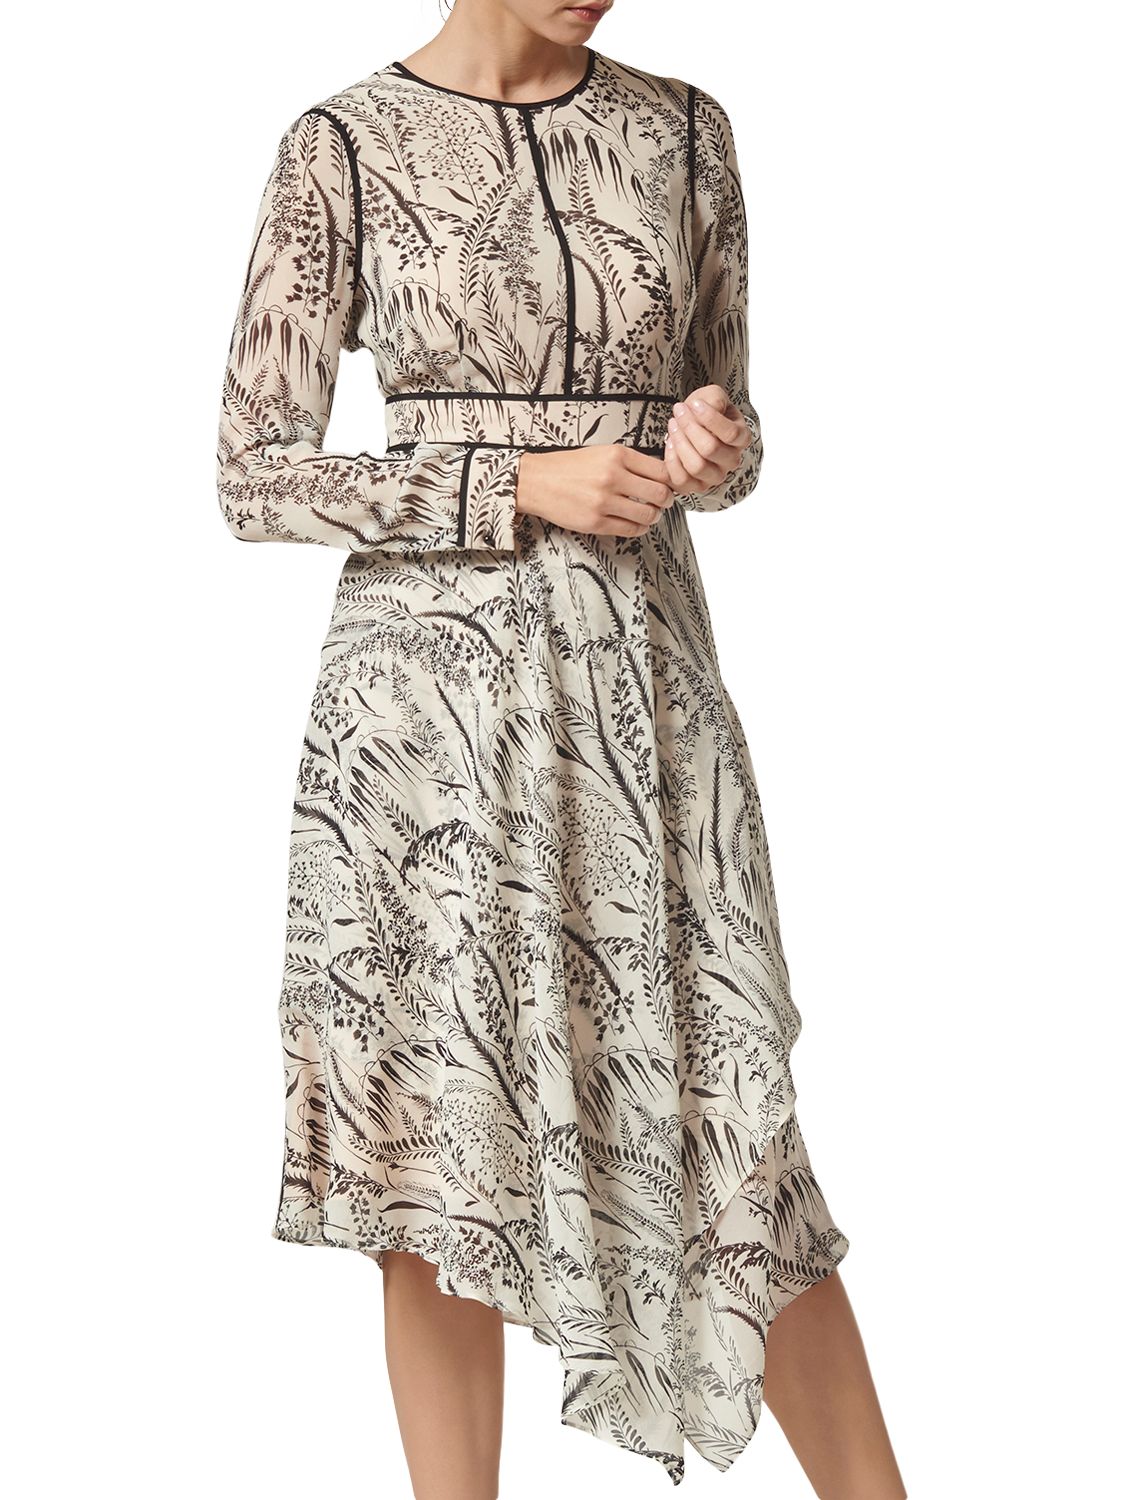 L.K.Bennett Linnea Printed Silk Dress, Cream